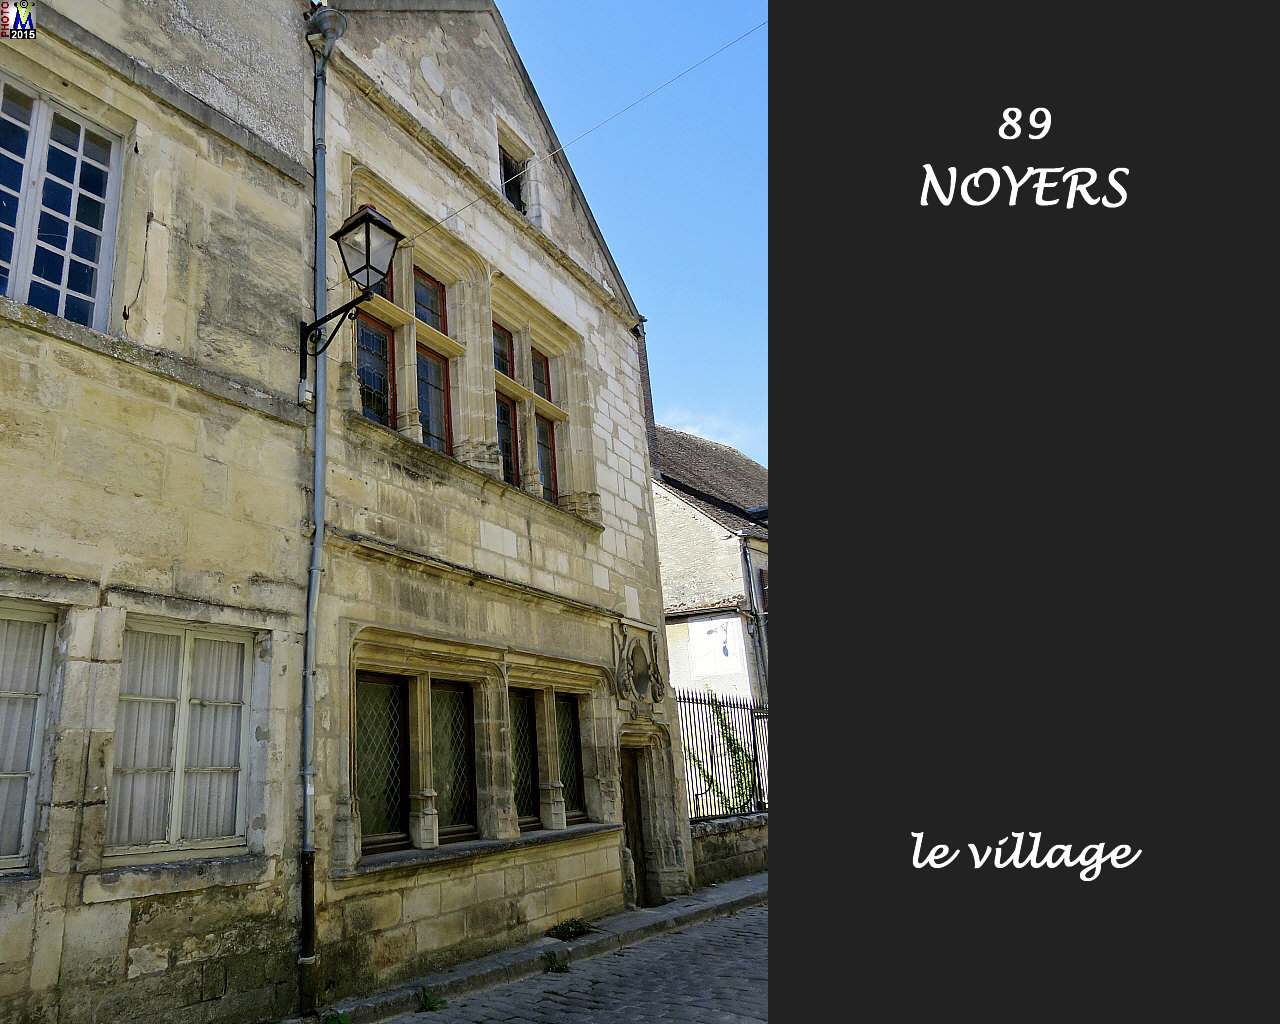 89NOYERS_village_190.jpg